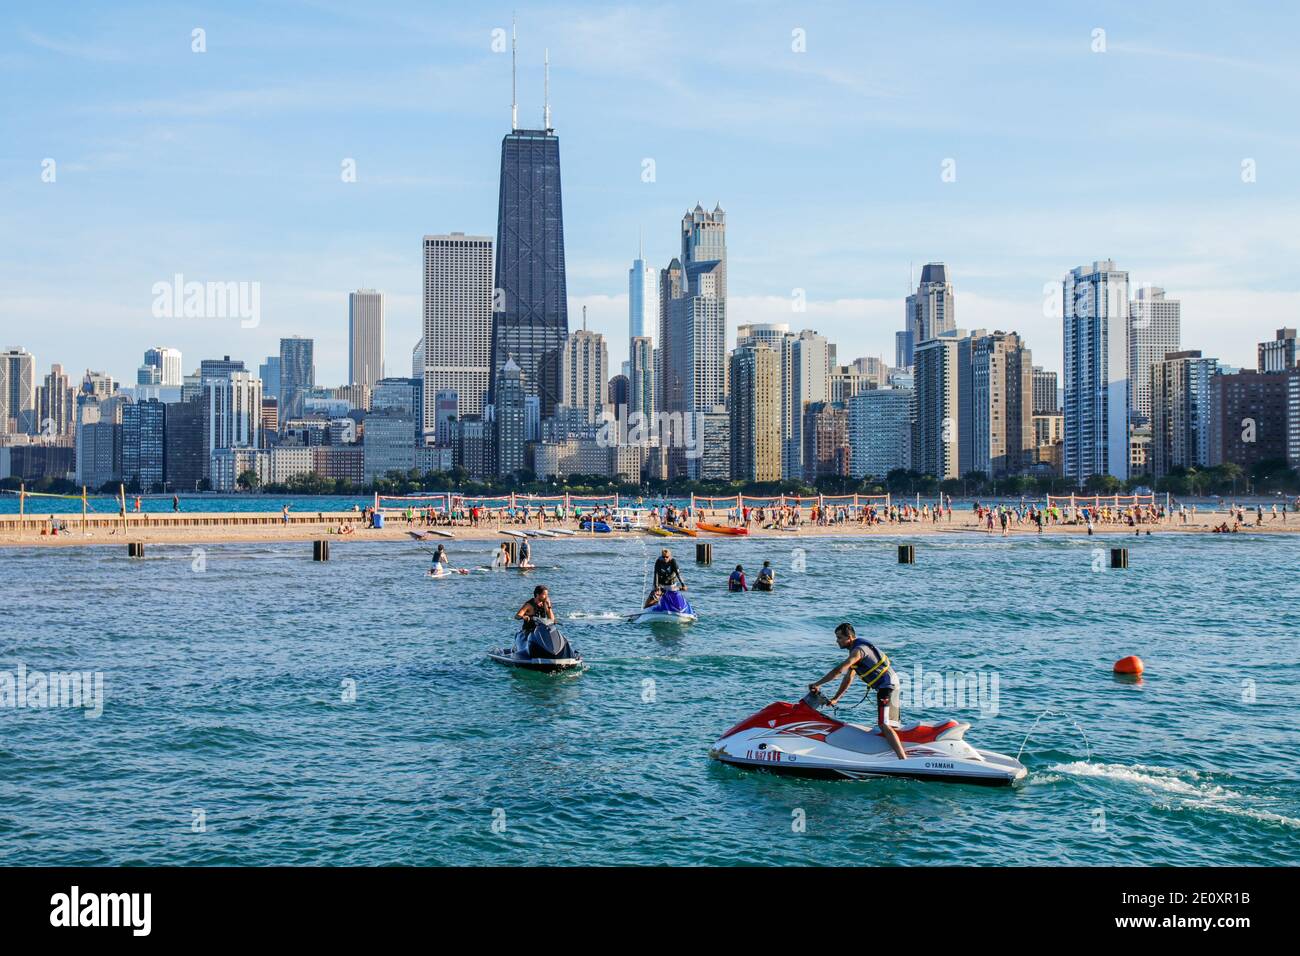 Persönliches Wasserfahrzeug, North Avenue Beach, Chicago Skyline im Hintergrund Stockfoto